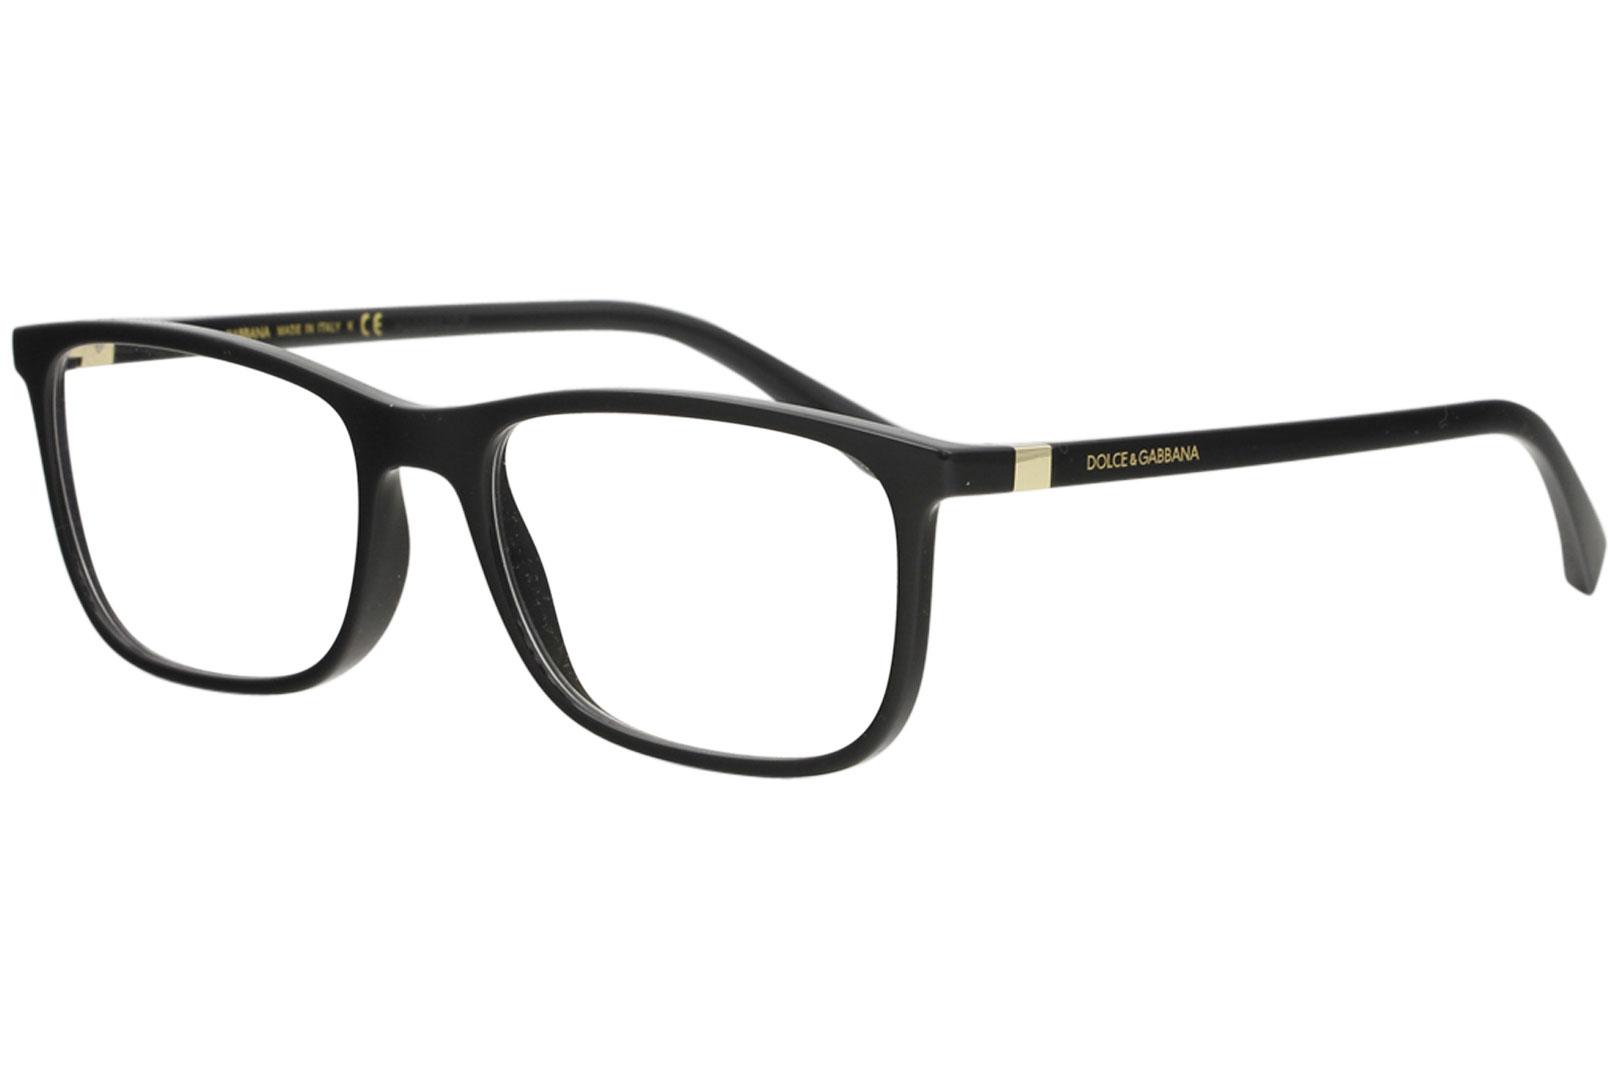 Dolce & Gabbana Men's Eyeglasses D&G DG5027 DG/5027 Full Rim Optical Frame - Black/Gold   501 - Lens 55 Bridge 18 B 39.8 ED 59.1 Temple 140mm